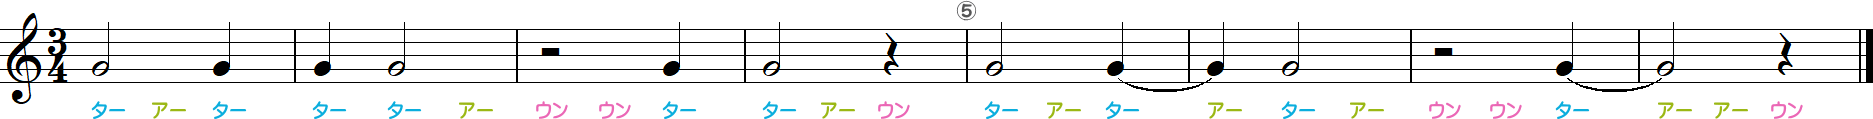 4分の3拍子のリズム練習8小節